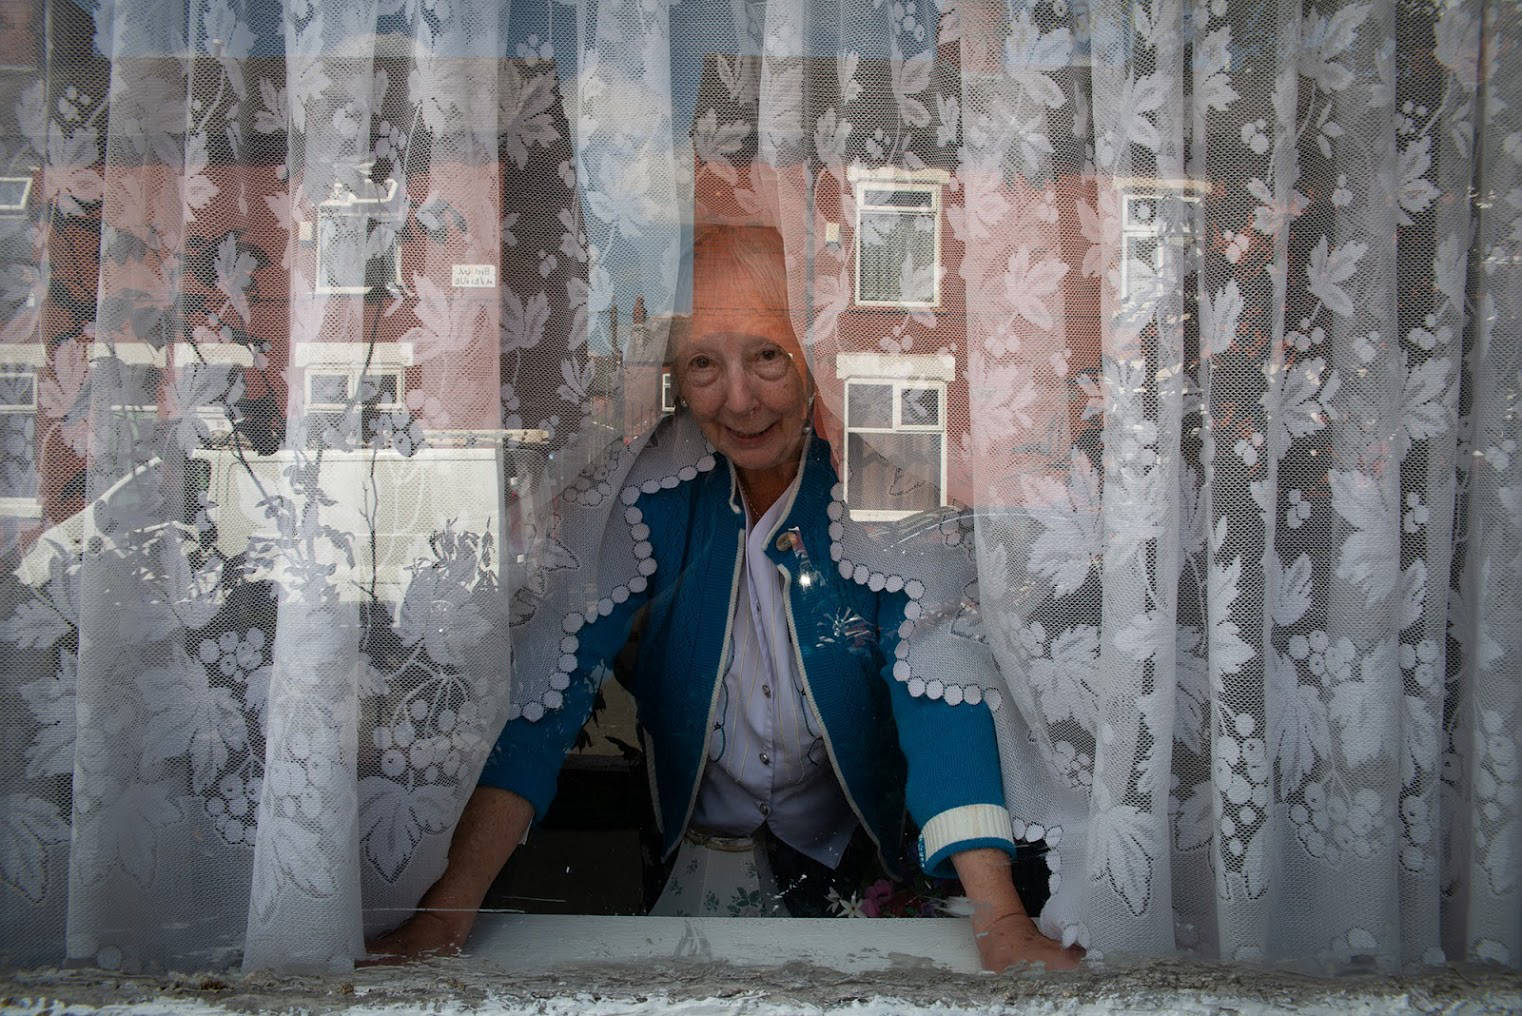 An elderly woman looking outside her window.